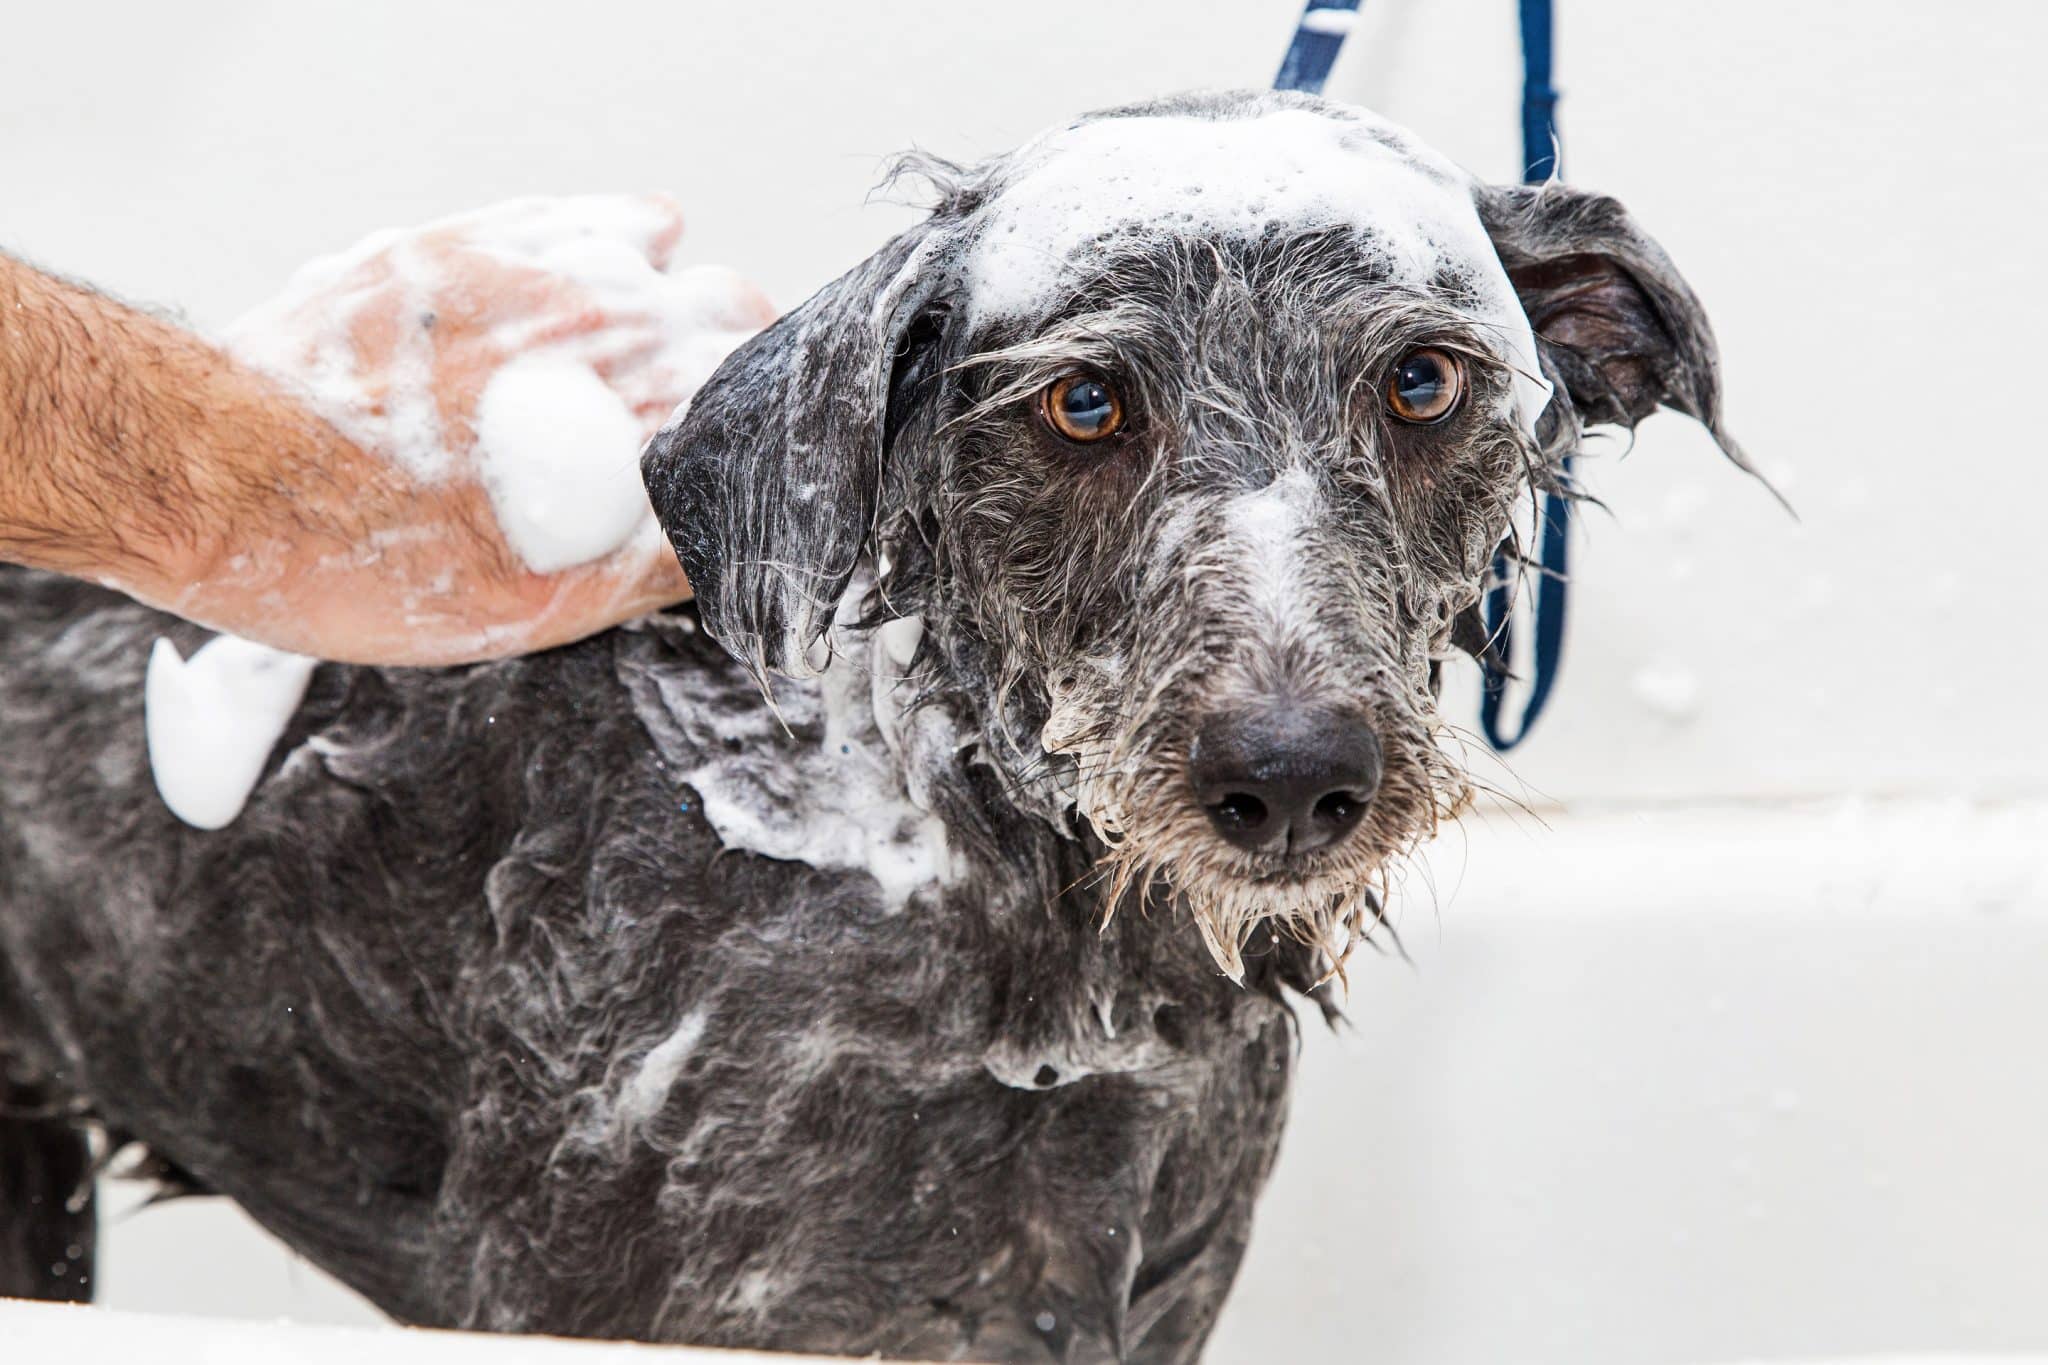 A soapy dog getting a bath in the tub.